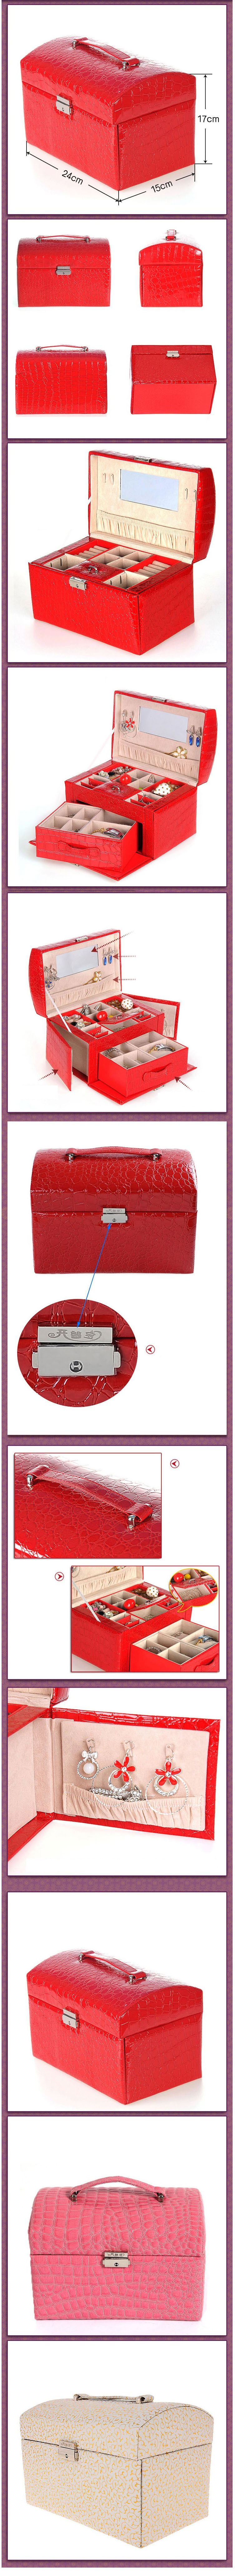 开馨宝欧式可侧开门双层大容量首饰盒/饰品收纳盒-大红色鳄鱼纹（K8528-1）。